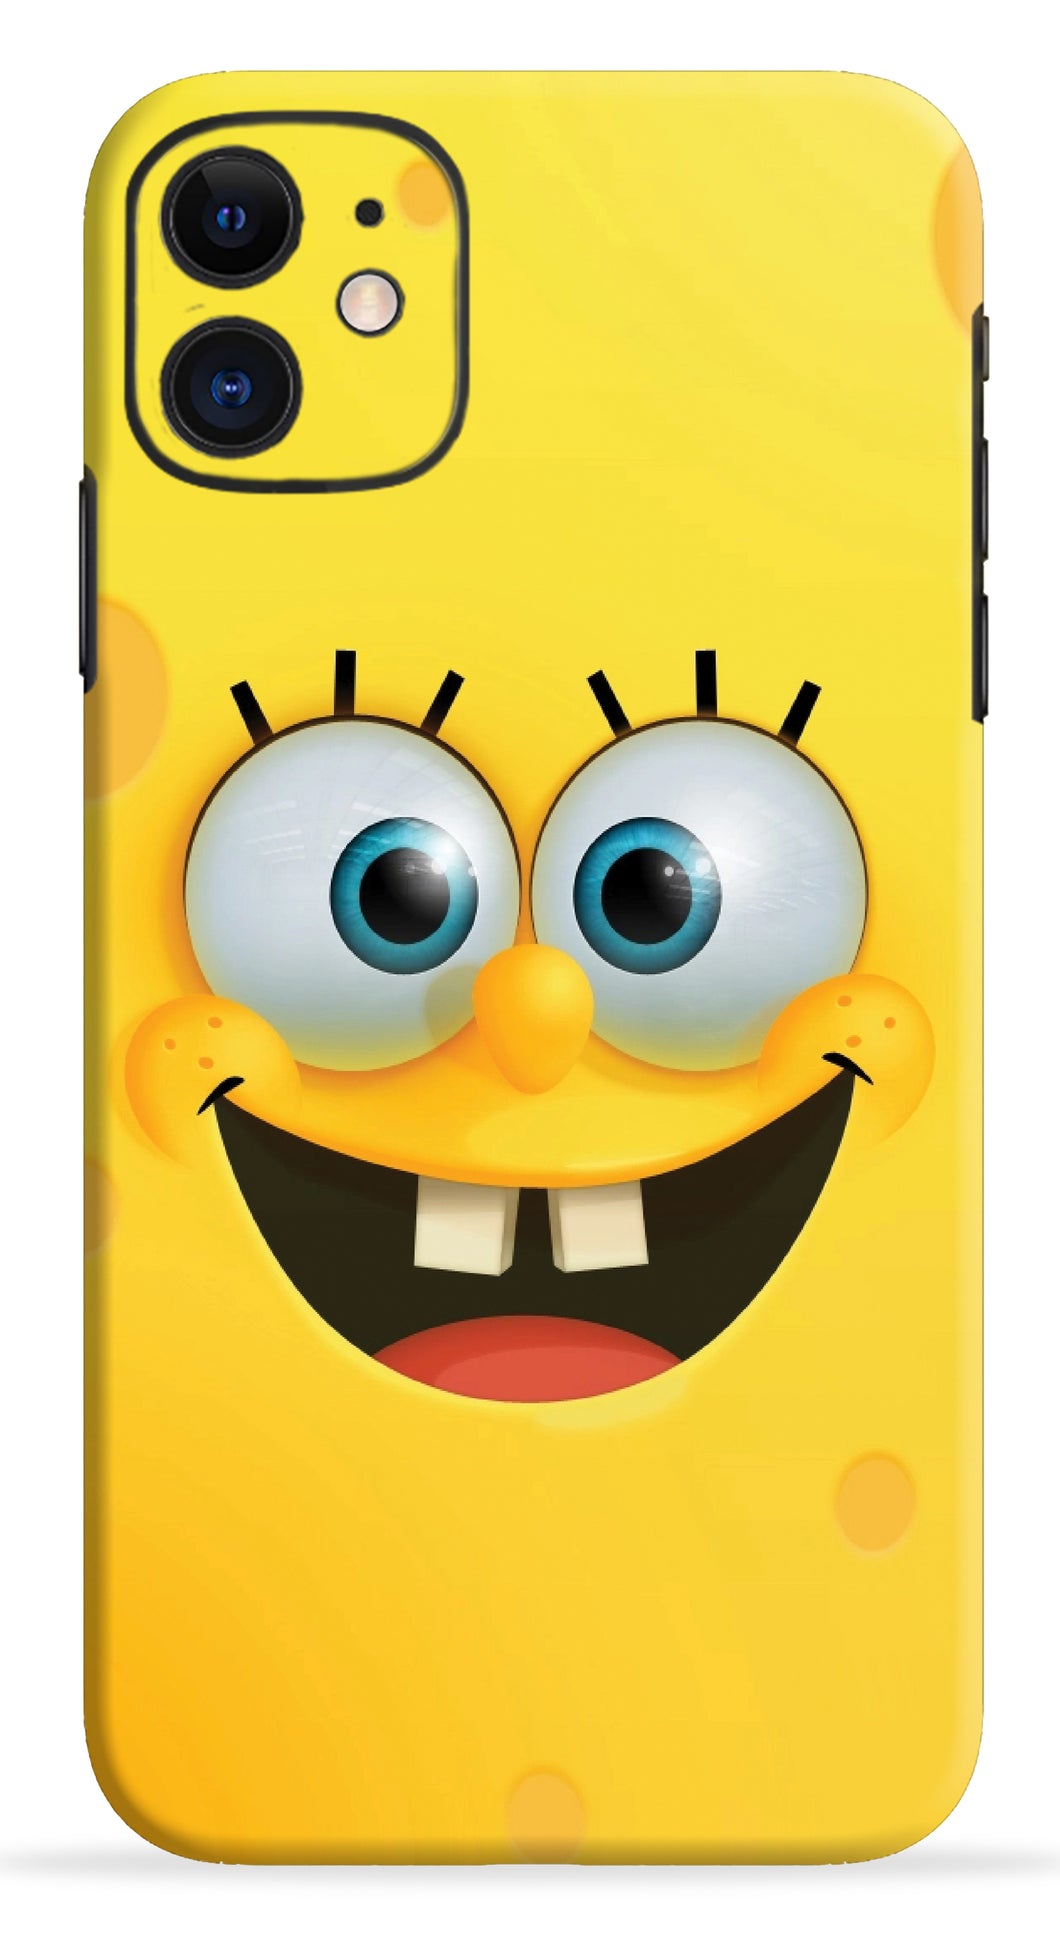 Spongebob Mobile Skin Wrap